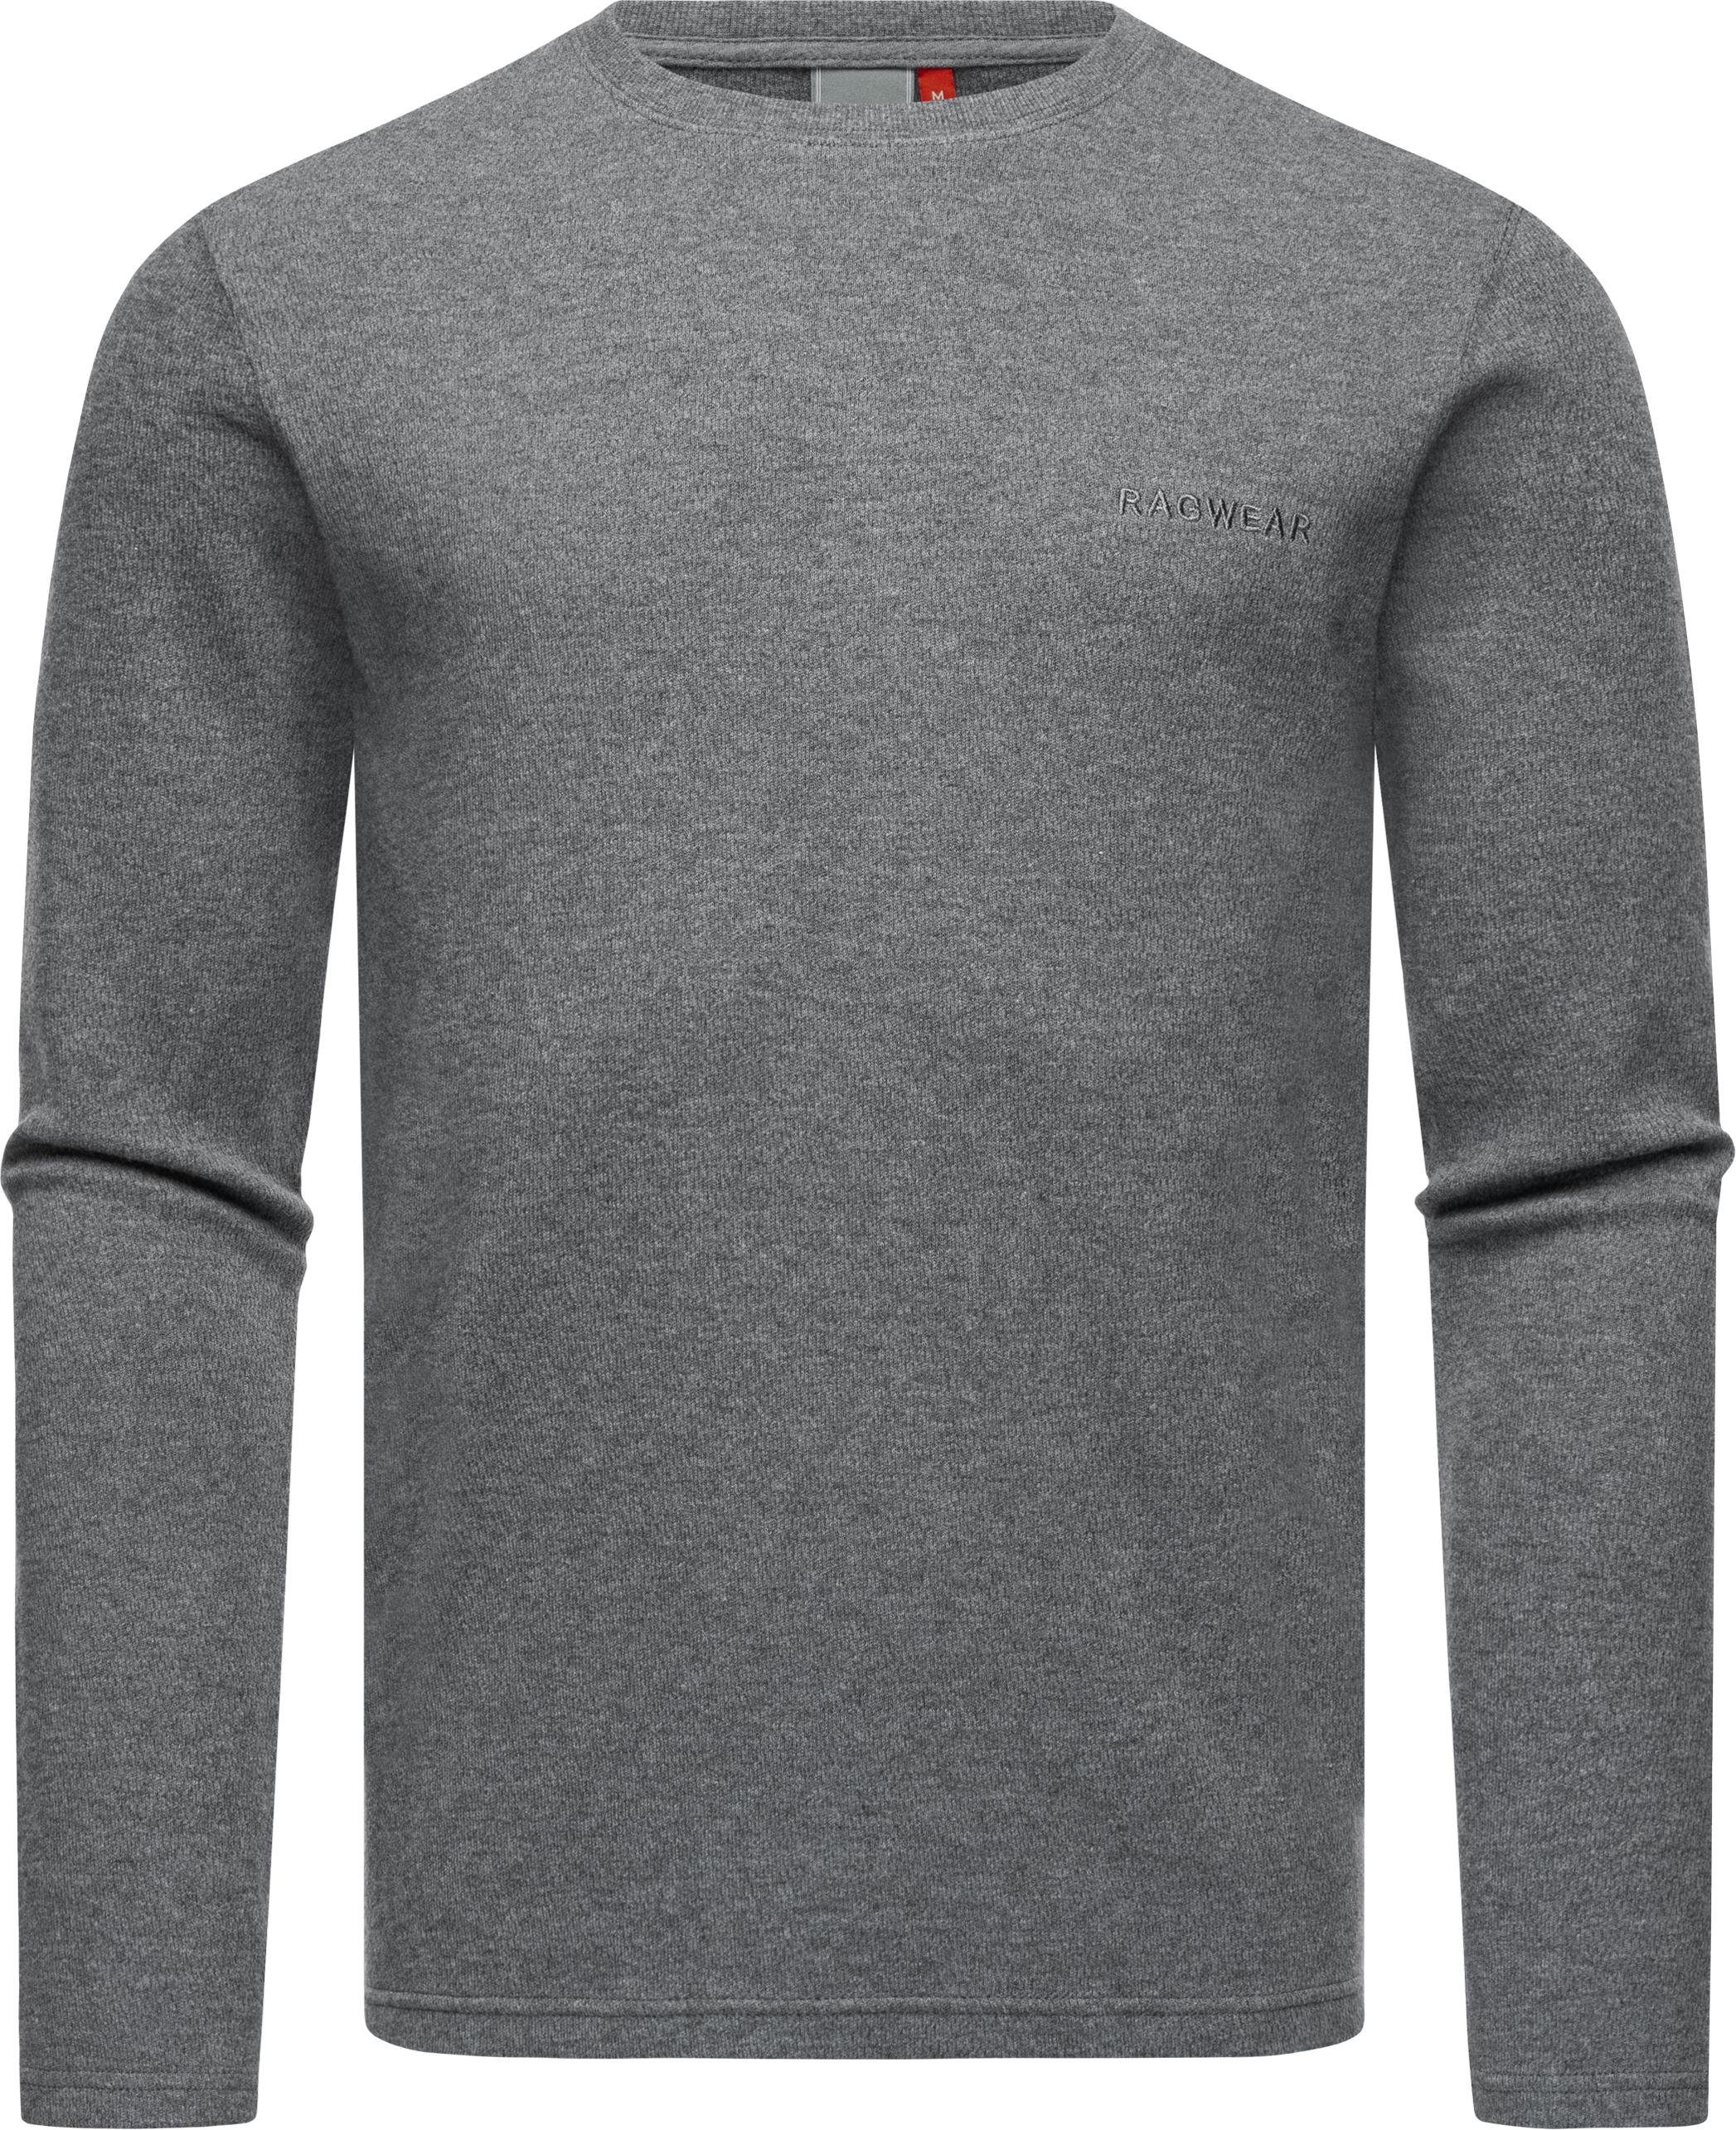 Sweatshirt grau Cyen Pullover Herren Ragwear Stylischer leichter